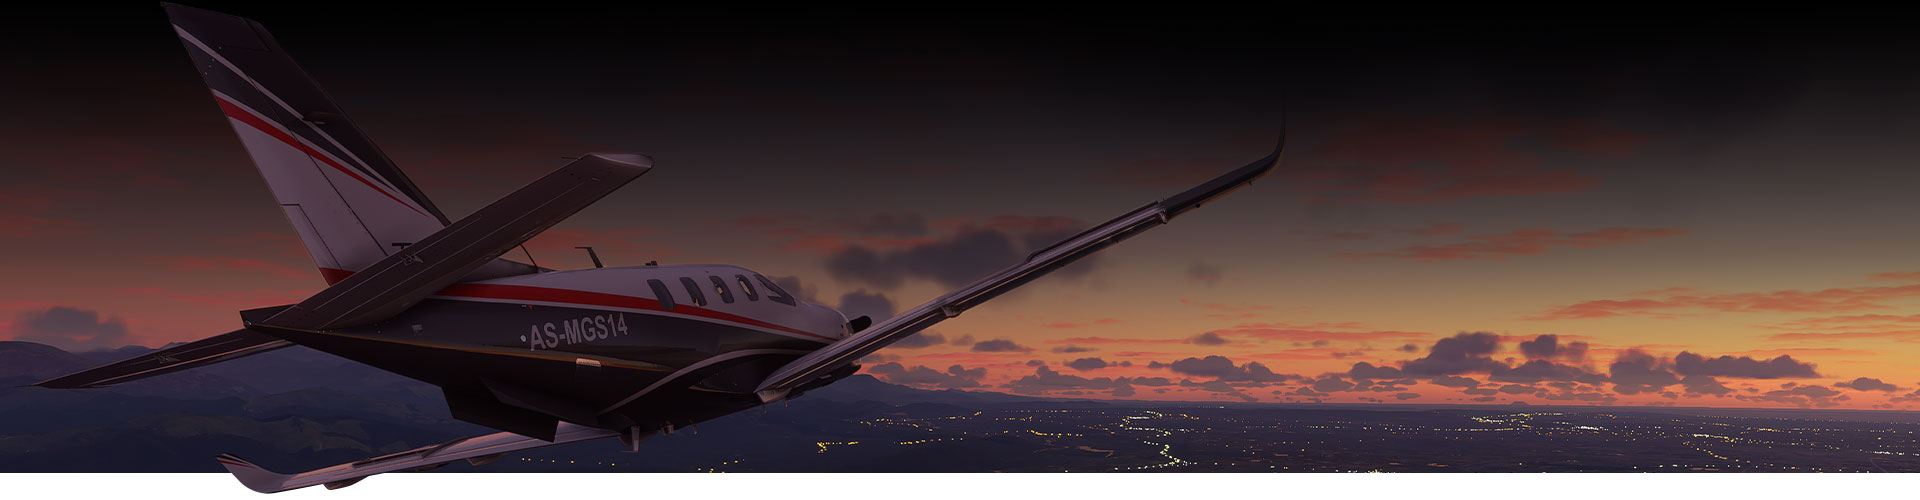 Avión de Microsoft Flight Simulator volando sobre una ciudad al atardecer